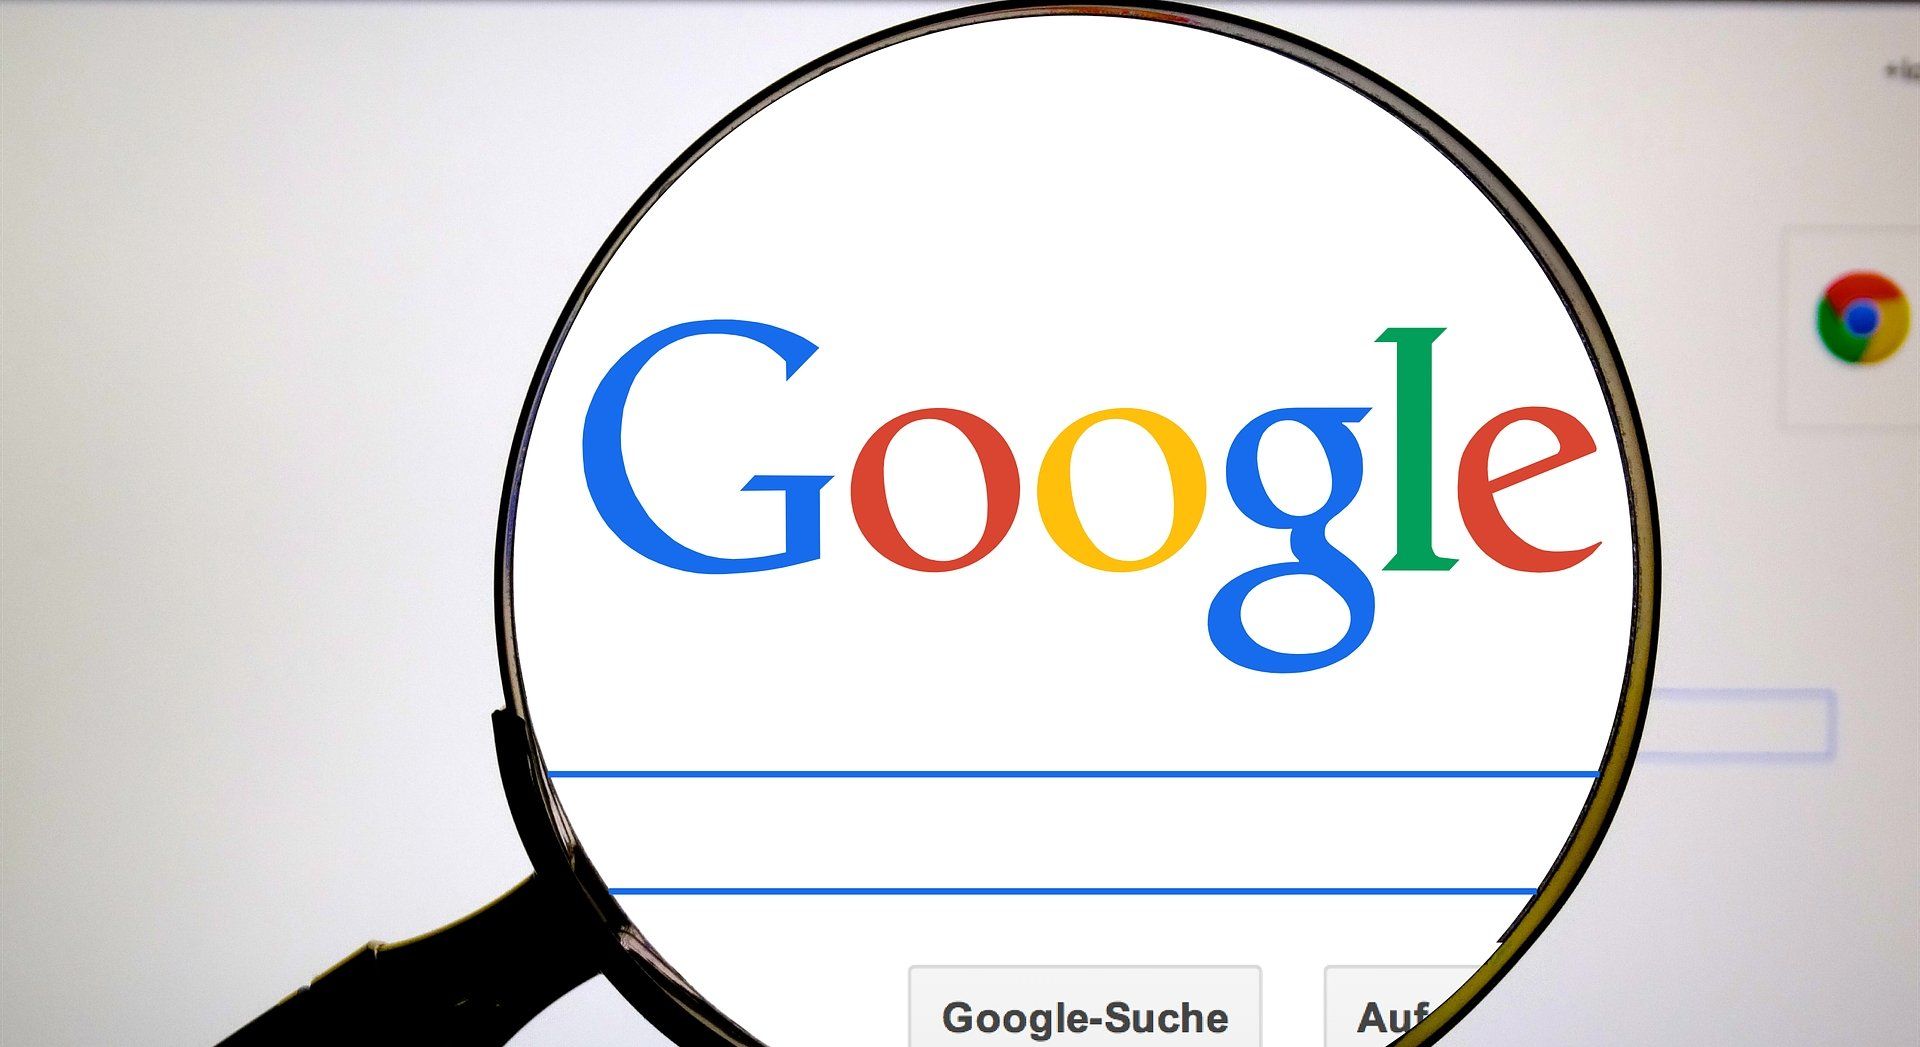 Busca do Google agora reúne vagas de emprego